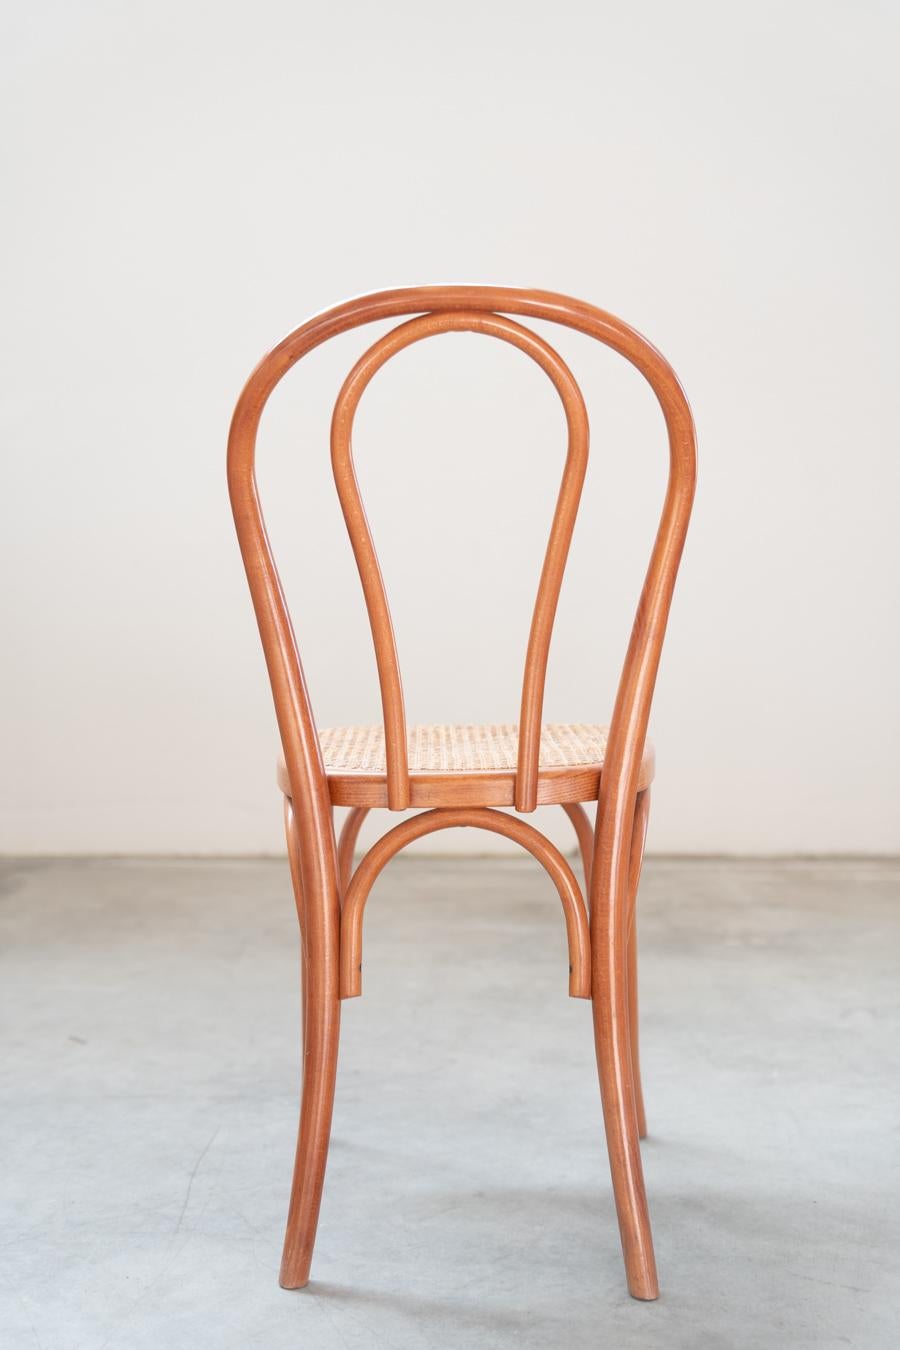 Sedie stile Thonet, in legno di faggio curvato e seduta in paglia, nr 34 totale For Sale 6